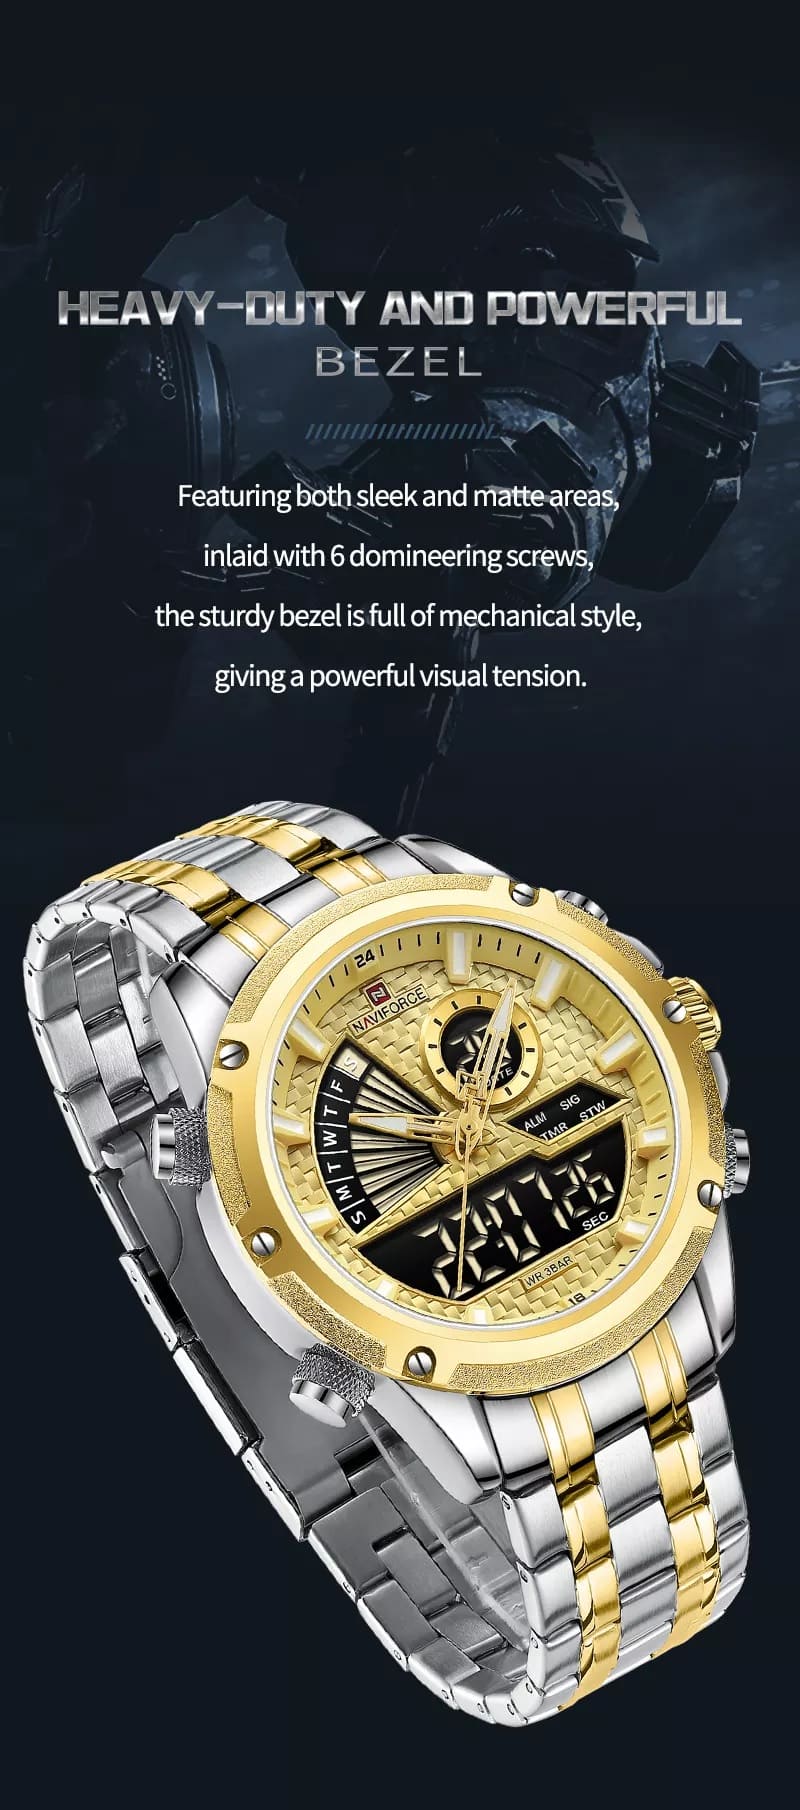 Naviforce Men's Watch NF9205 S G | Watches Prime